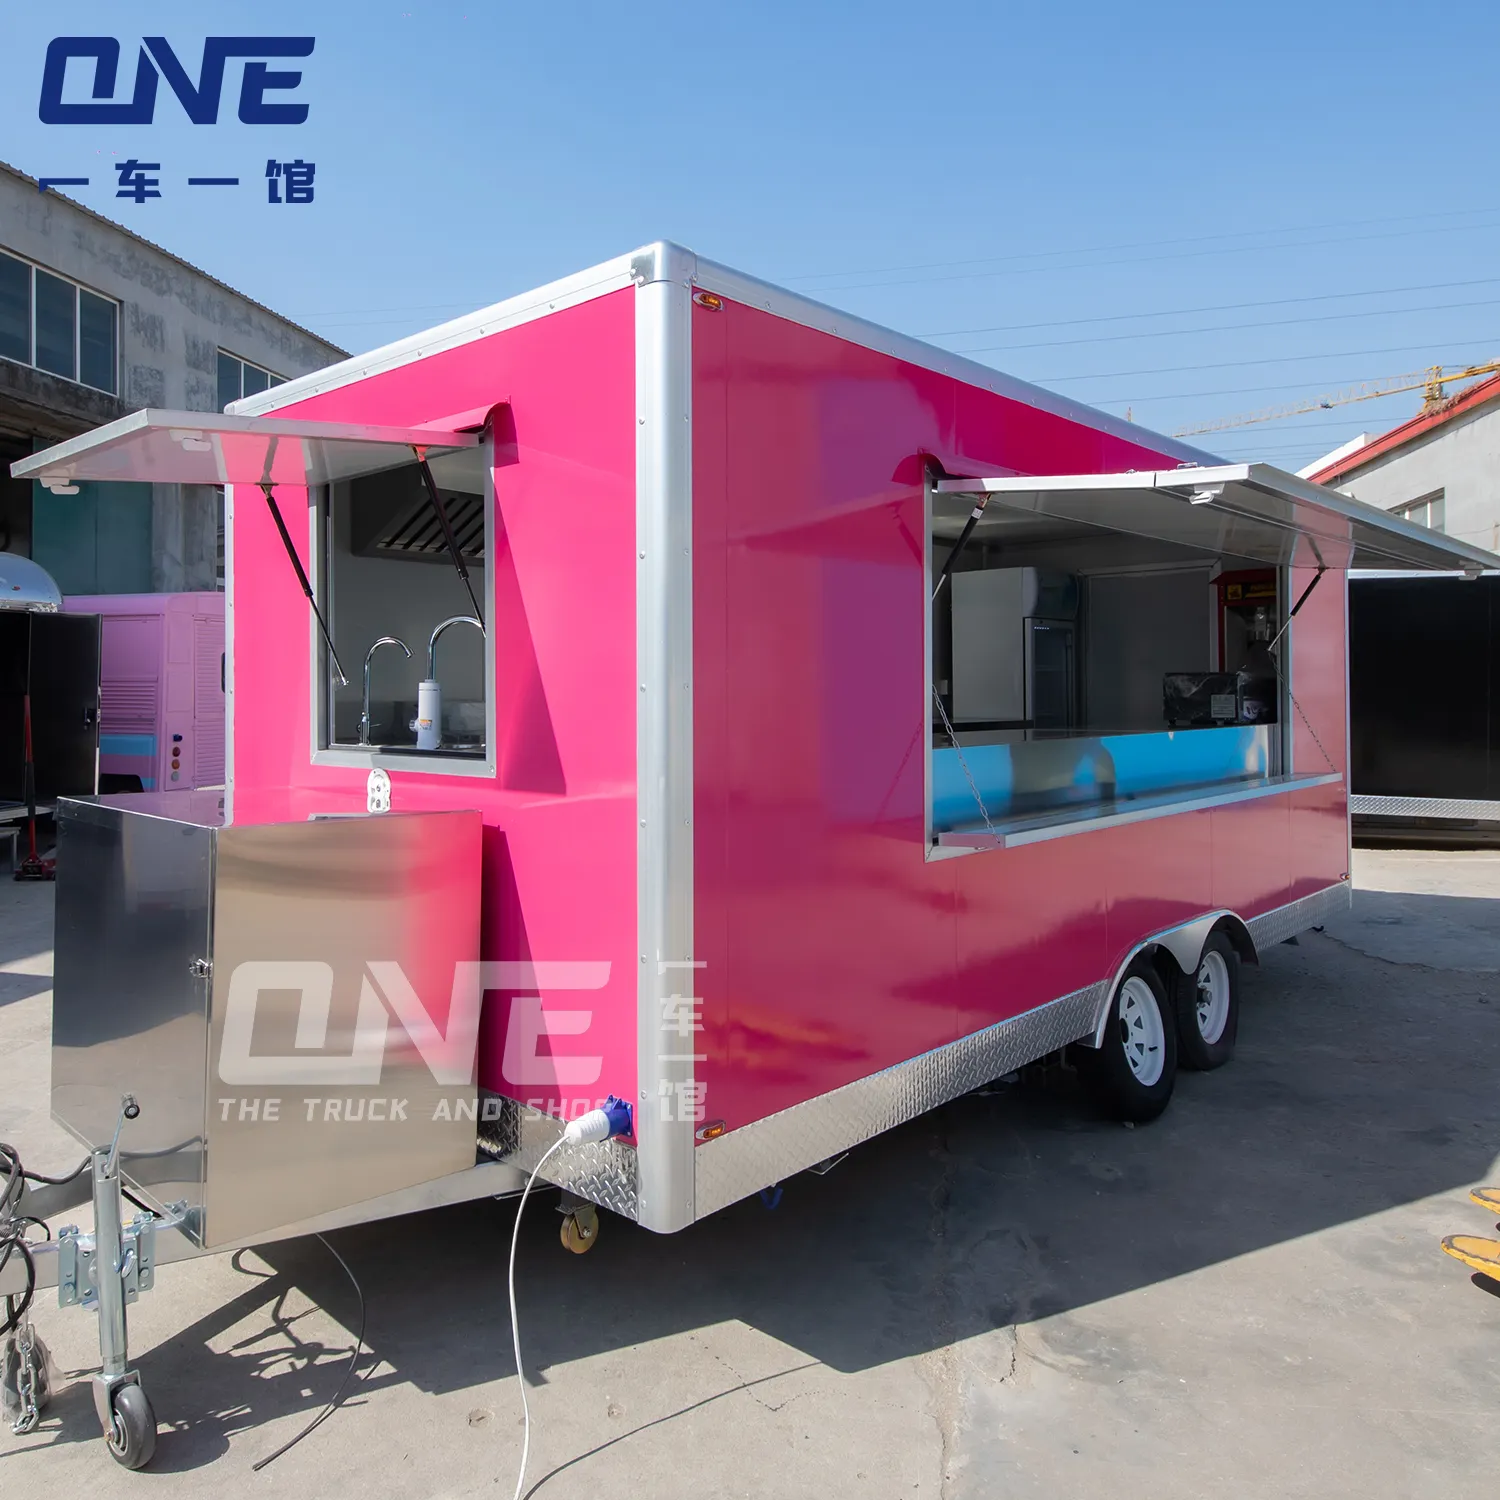 Mobile salon food truck pink hot dog stand mobile kitchen ice cream kiosk carrello per hot dog con griglia e friggitrice rimorchio per alimenti